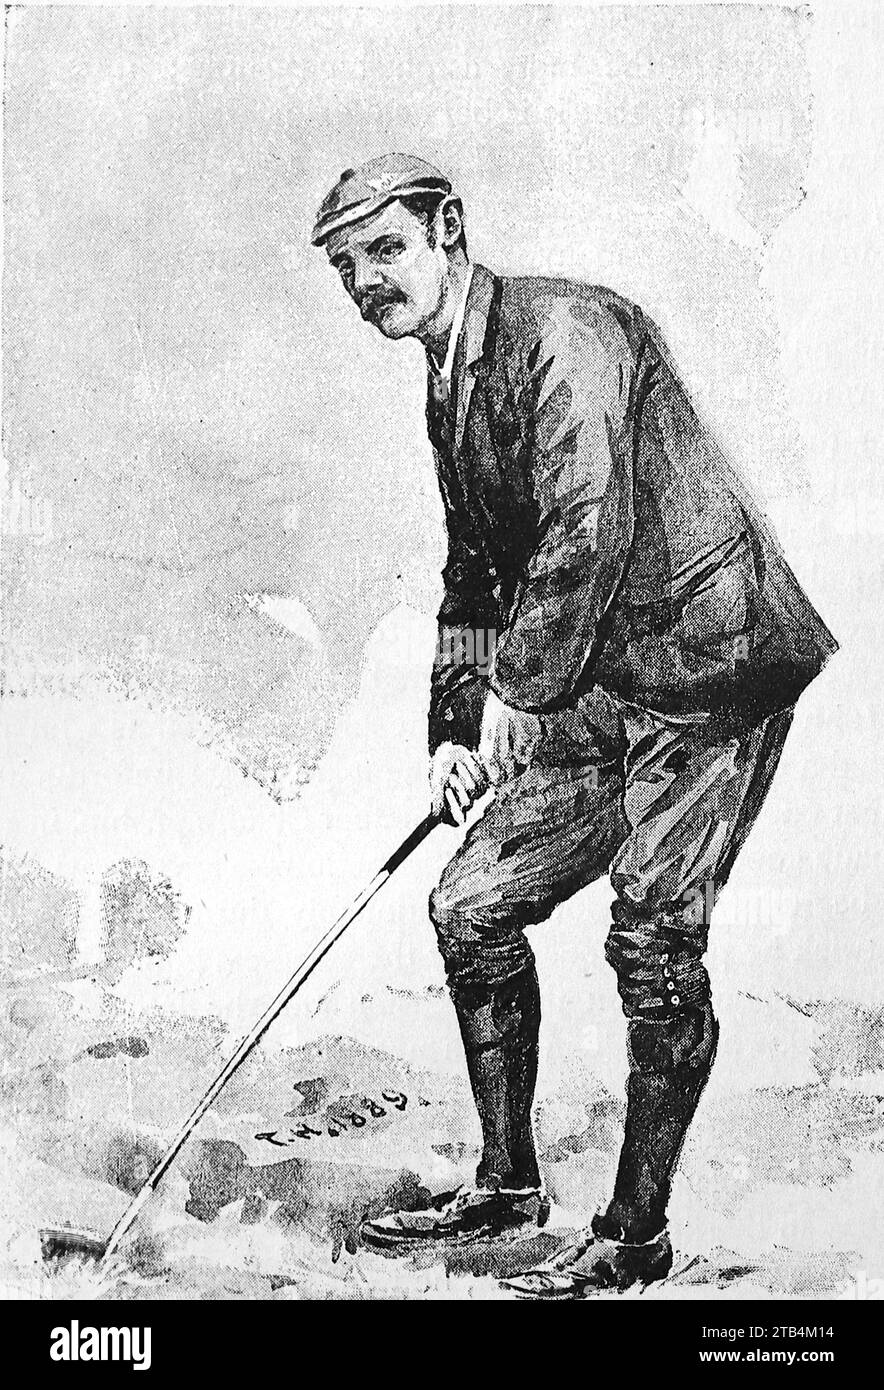 Mr. John Ball, di T. Hodge, c1889. Da un'illustrazione sul golf, datata dal 1889 al 1901. La storia del golf è lunga. Anche se le sue origini sono contestate, gli storici sono generalmente concordi sul fatto che quello che è conosciuto come "moderno" golf è iniziato nel Medioevo in Scozia. Fu solo dalla metà alla fine del XIX secolo che questo sport divenne più popolare in Gran Bretagna, nell'Impero britannico e poi negli Stati Uniti. Nel corso degli anni, l'umile palla da golf e il golf club sono cambiati enormemente. Foto Stock